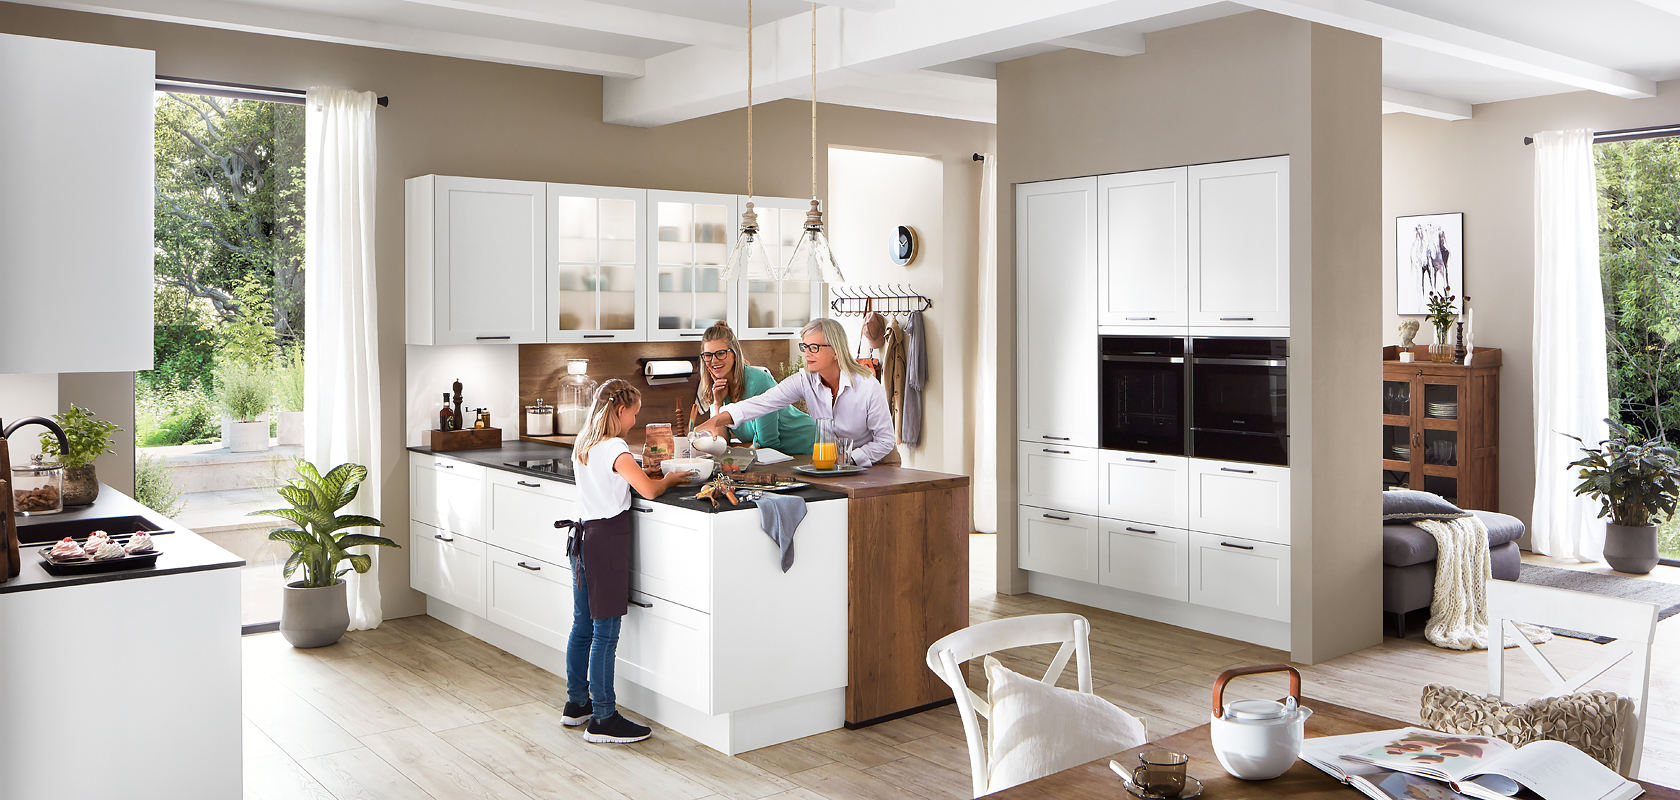 Una cocina moderna llena de luz natural donde una familia disfruta del tiempo juntos, mostrando gabinetes blancos elegantes y electrodomésticos de acero inoxidable.